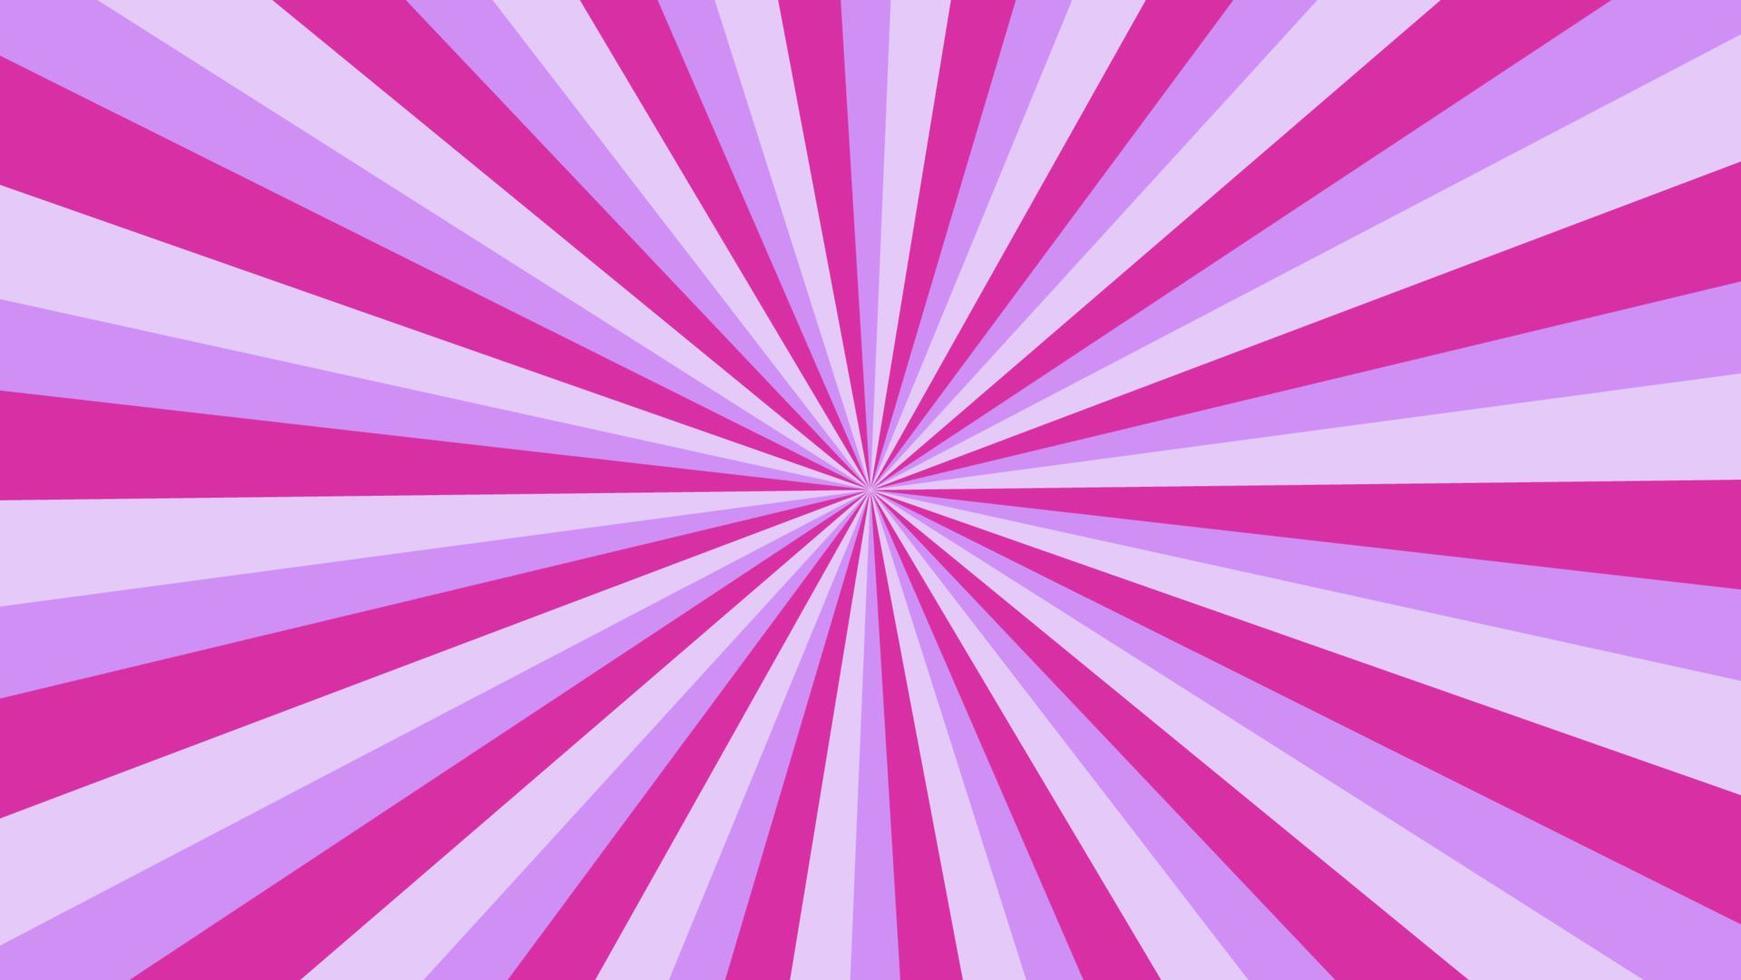 abstrakter purpurroter sonnendurchbruchmusterhintergrund für modernes grafikdesignelement. glänzender strahlkarikatur mit buntem für websitefahnentapete und plakatkartendekoration vektor